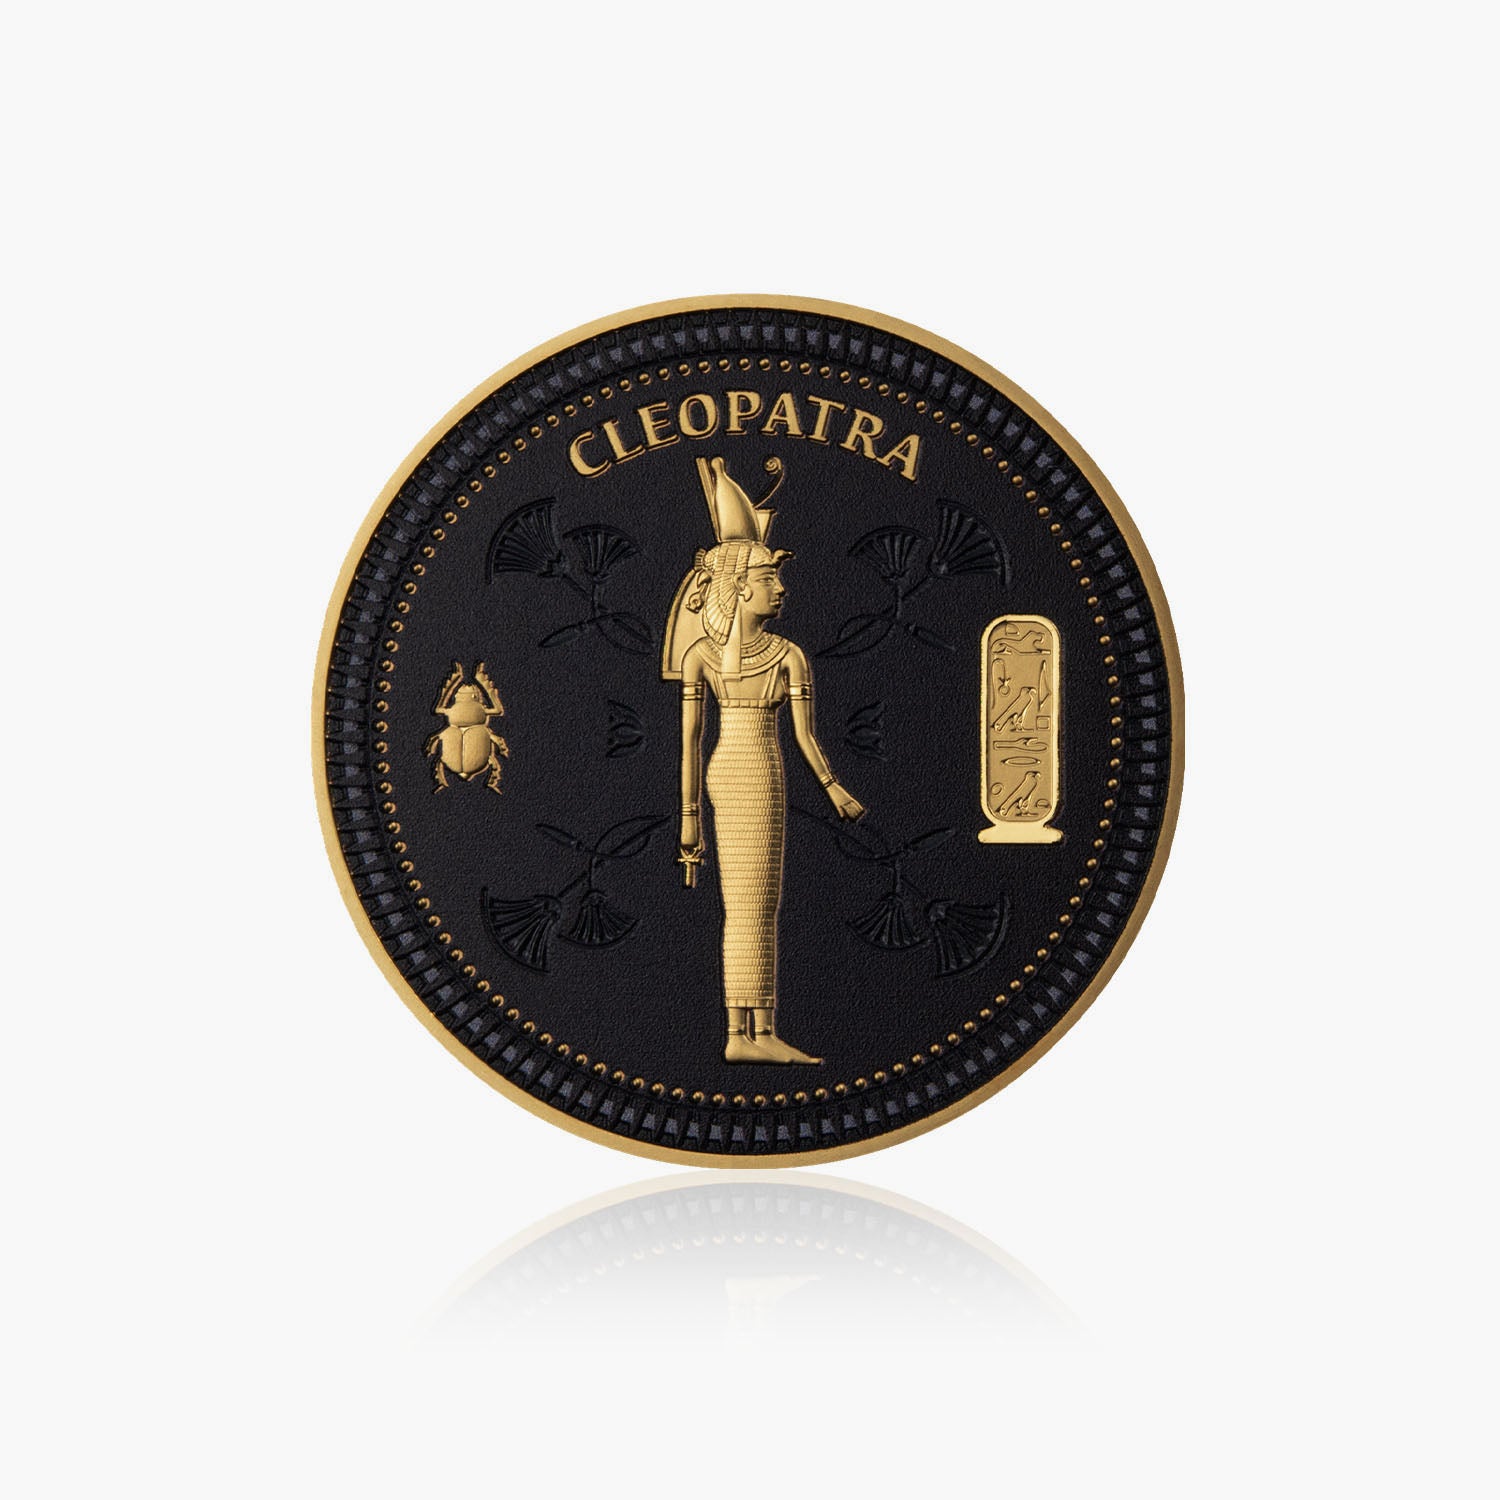 Les Mystères de l'Egypte Ancienne 2023 Cléopâtre Coin